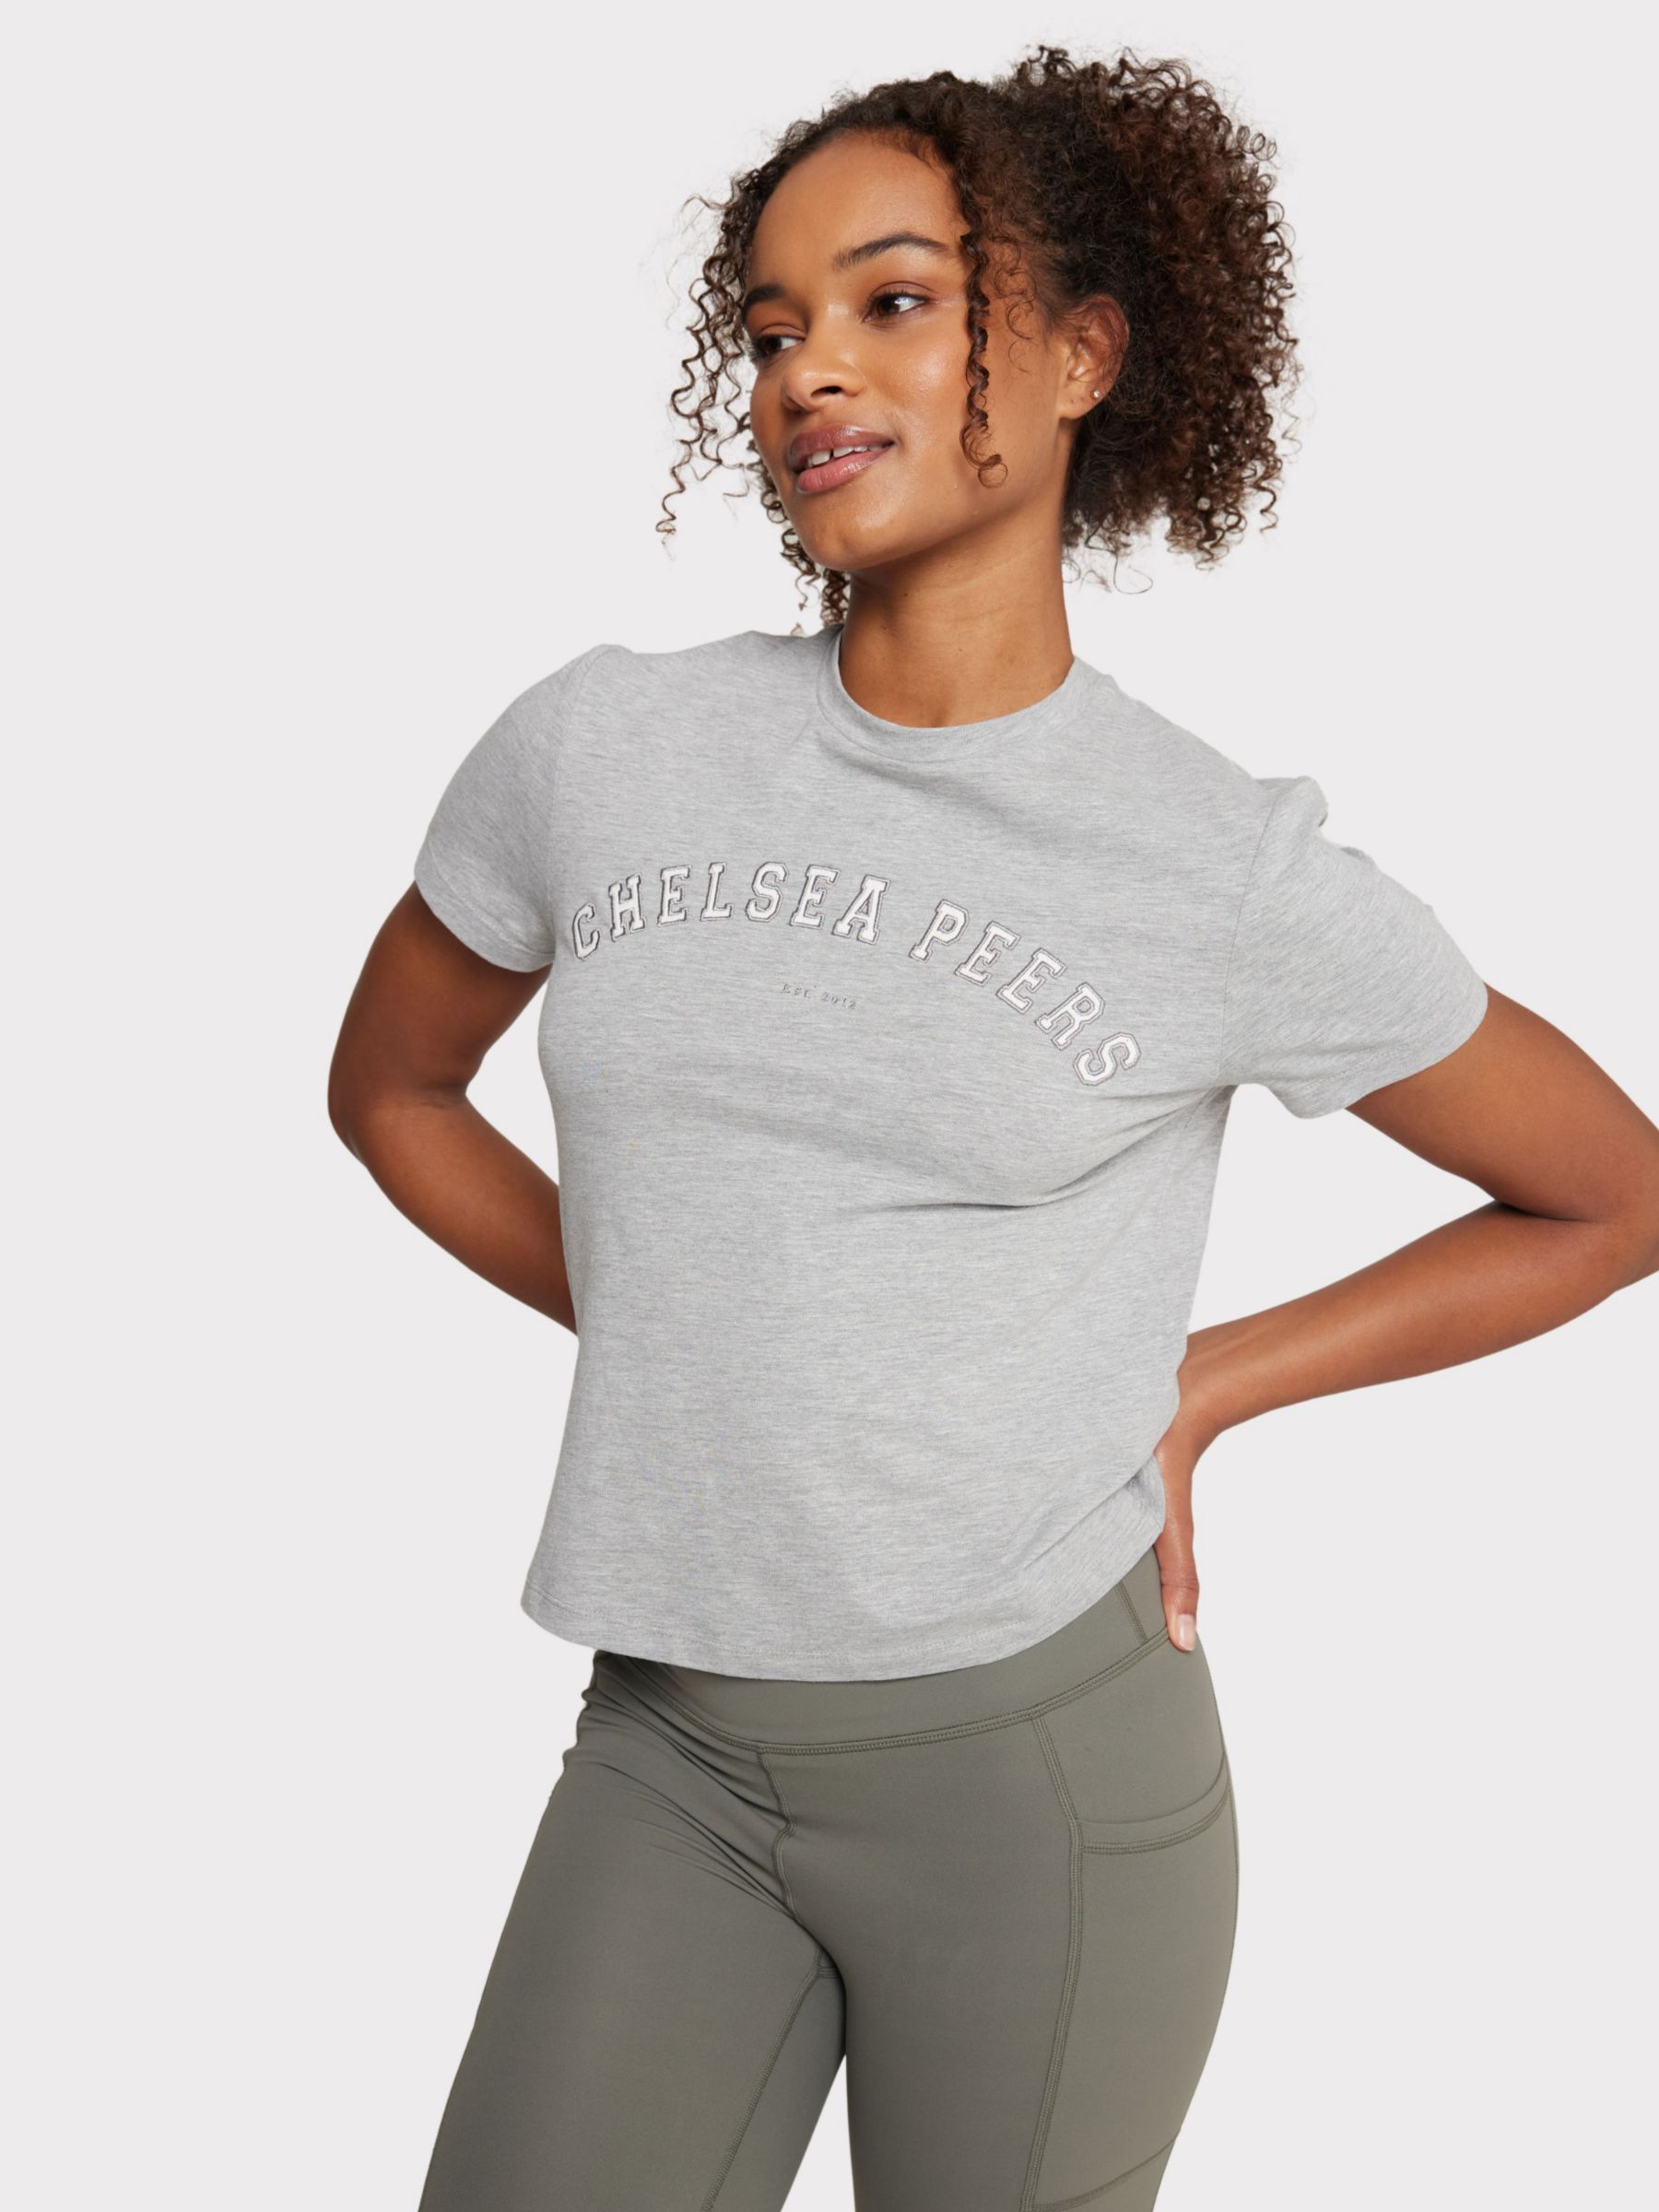 Buy Chelsea Peers Logo Crop T-Shirt Online at johnlewis.com